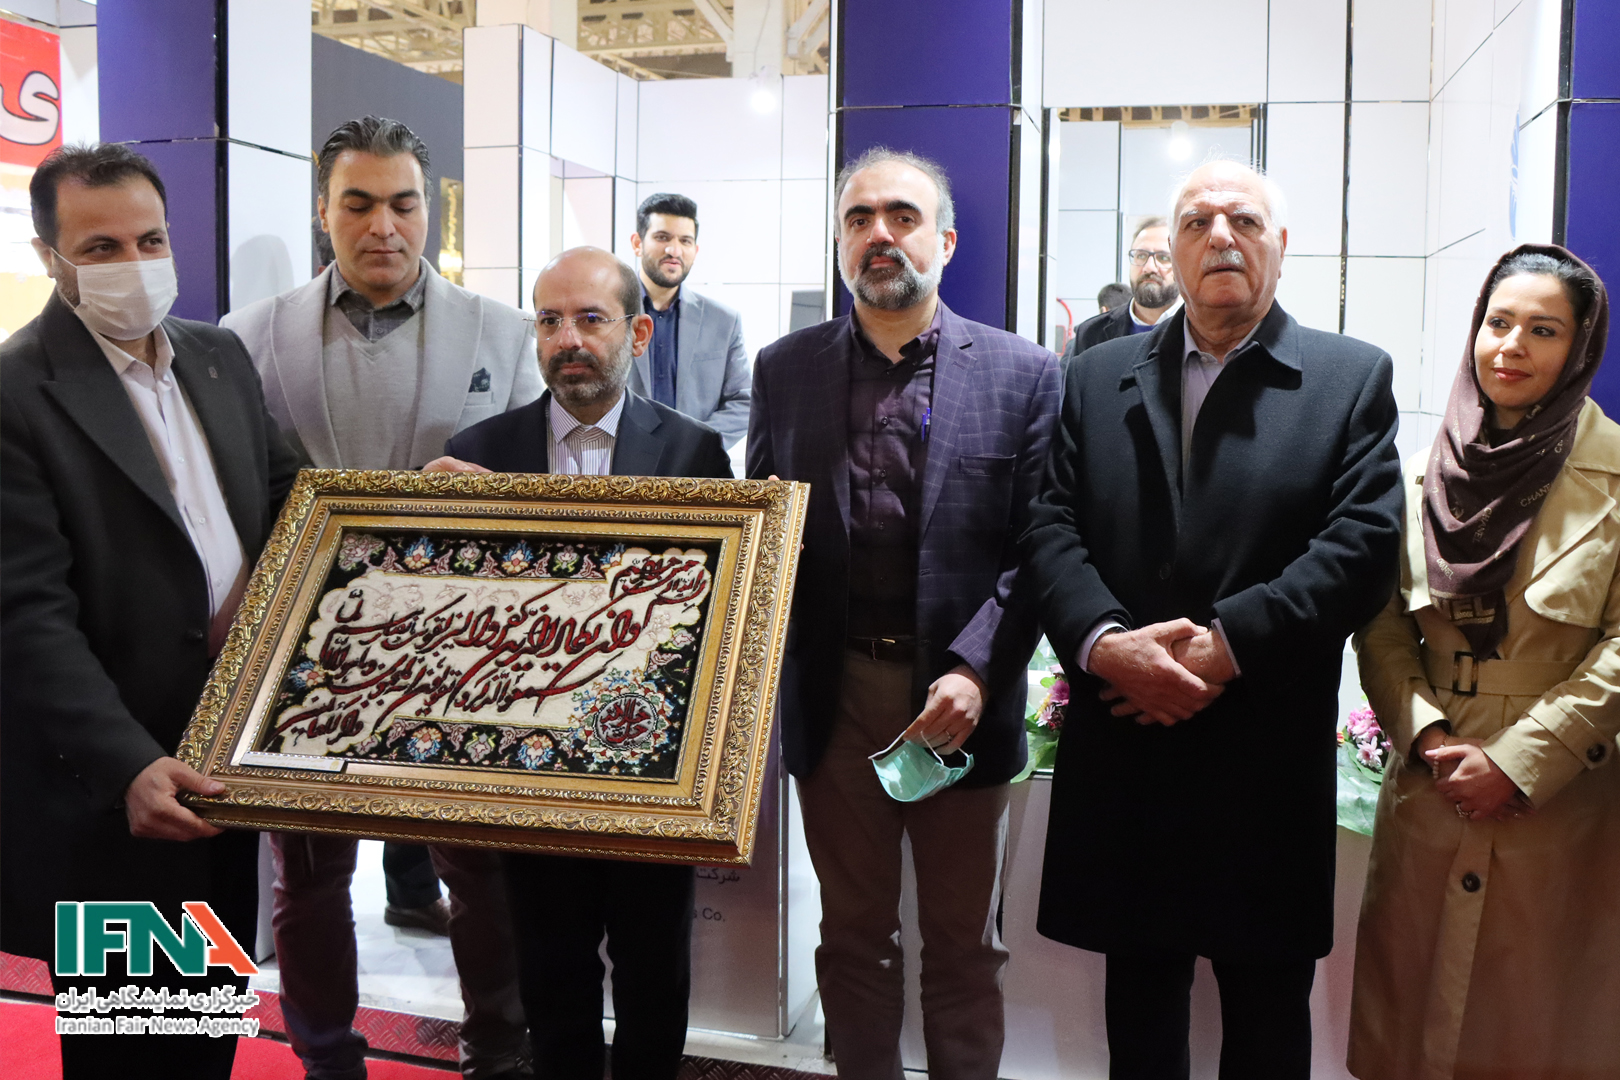 لوستر های ایرانی زیر یک سقف روشن شدند / اروپا مشتری لوسترهای ایرانی است + اخبار نمایشگاه